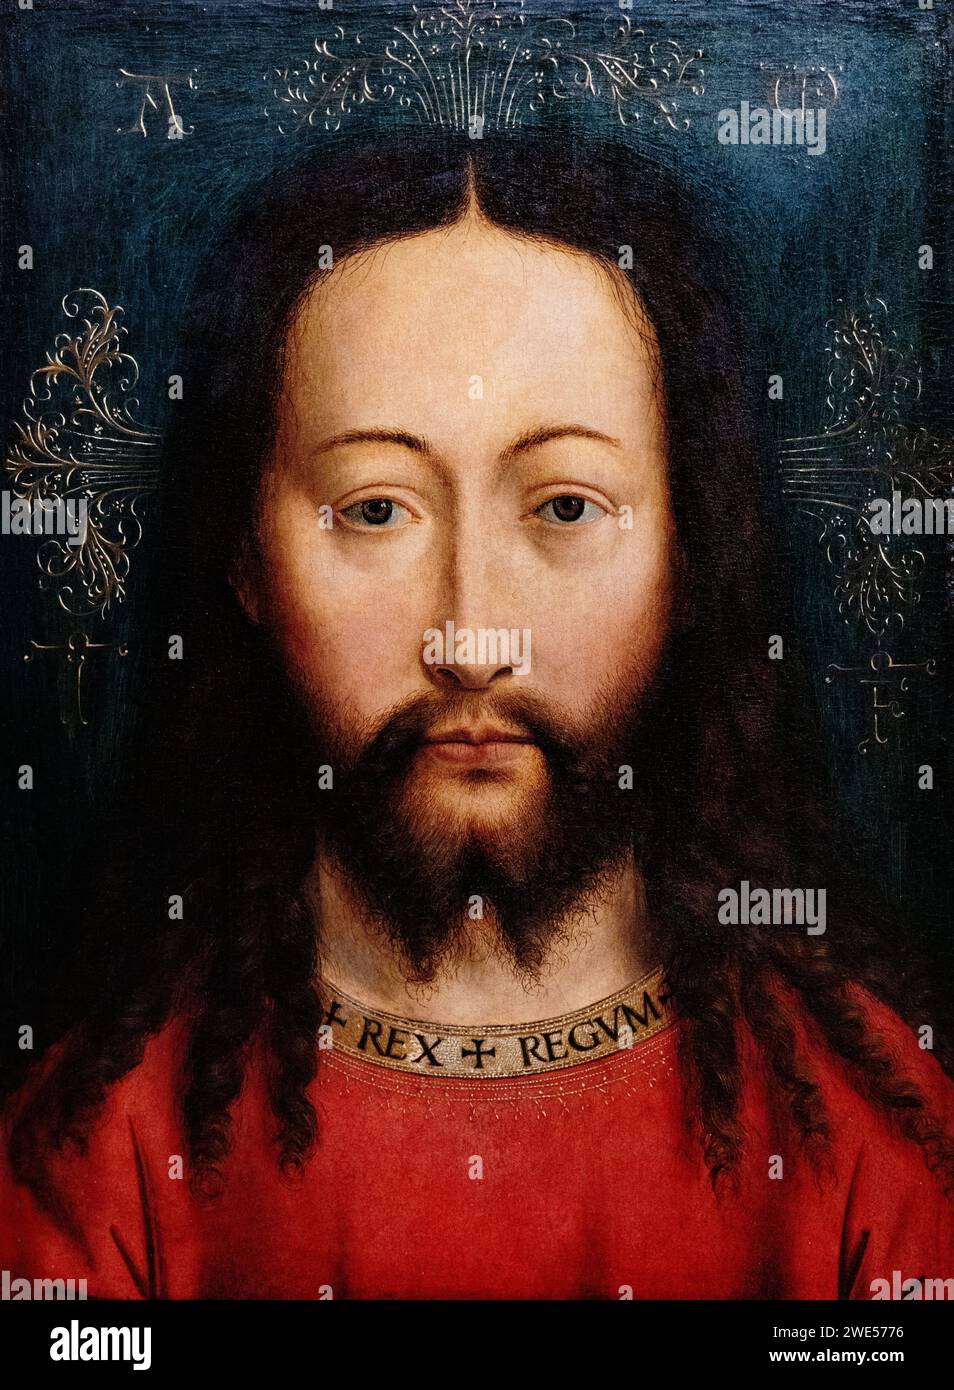 Kopie nach Jan van Eyck Malerei; „das Heilige Gesicht Christi“ um 1500; Öl auf Eichenholz; Jesus Christus malte Kopf und Gesicht. Siehe zusätzliche Hinweise. Stockfoto